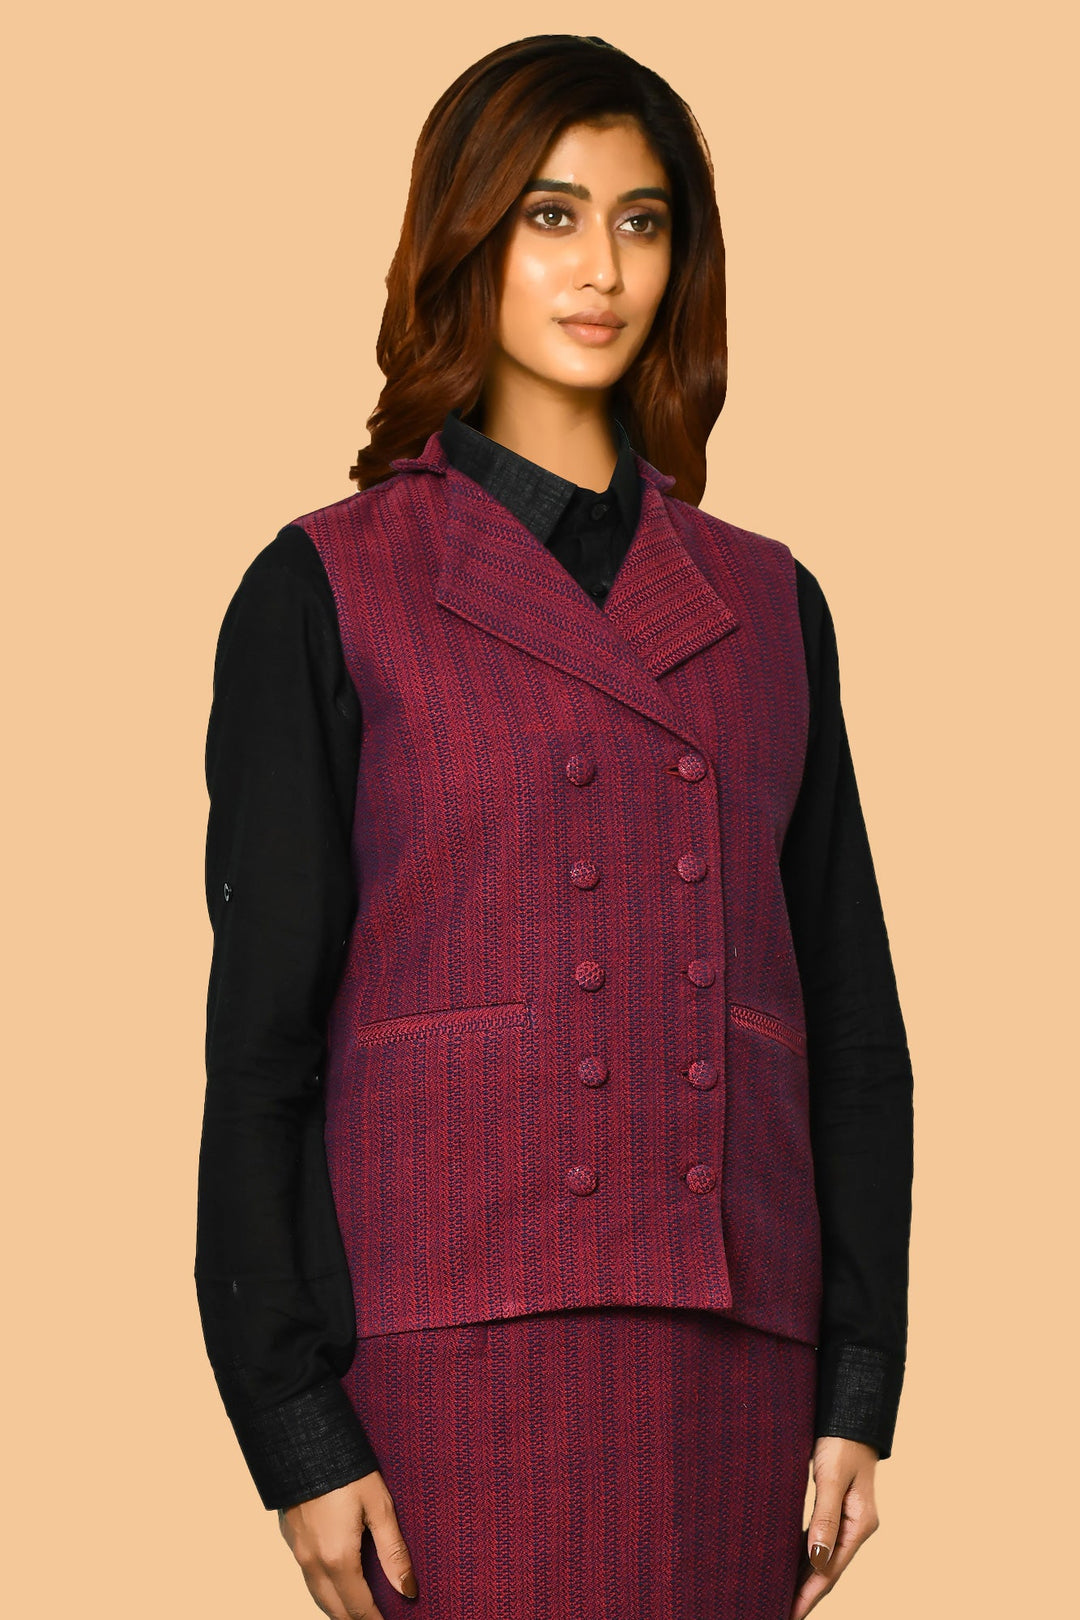 Trisha Handloom Pure Cotton Waist-Coat Jacket